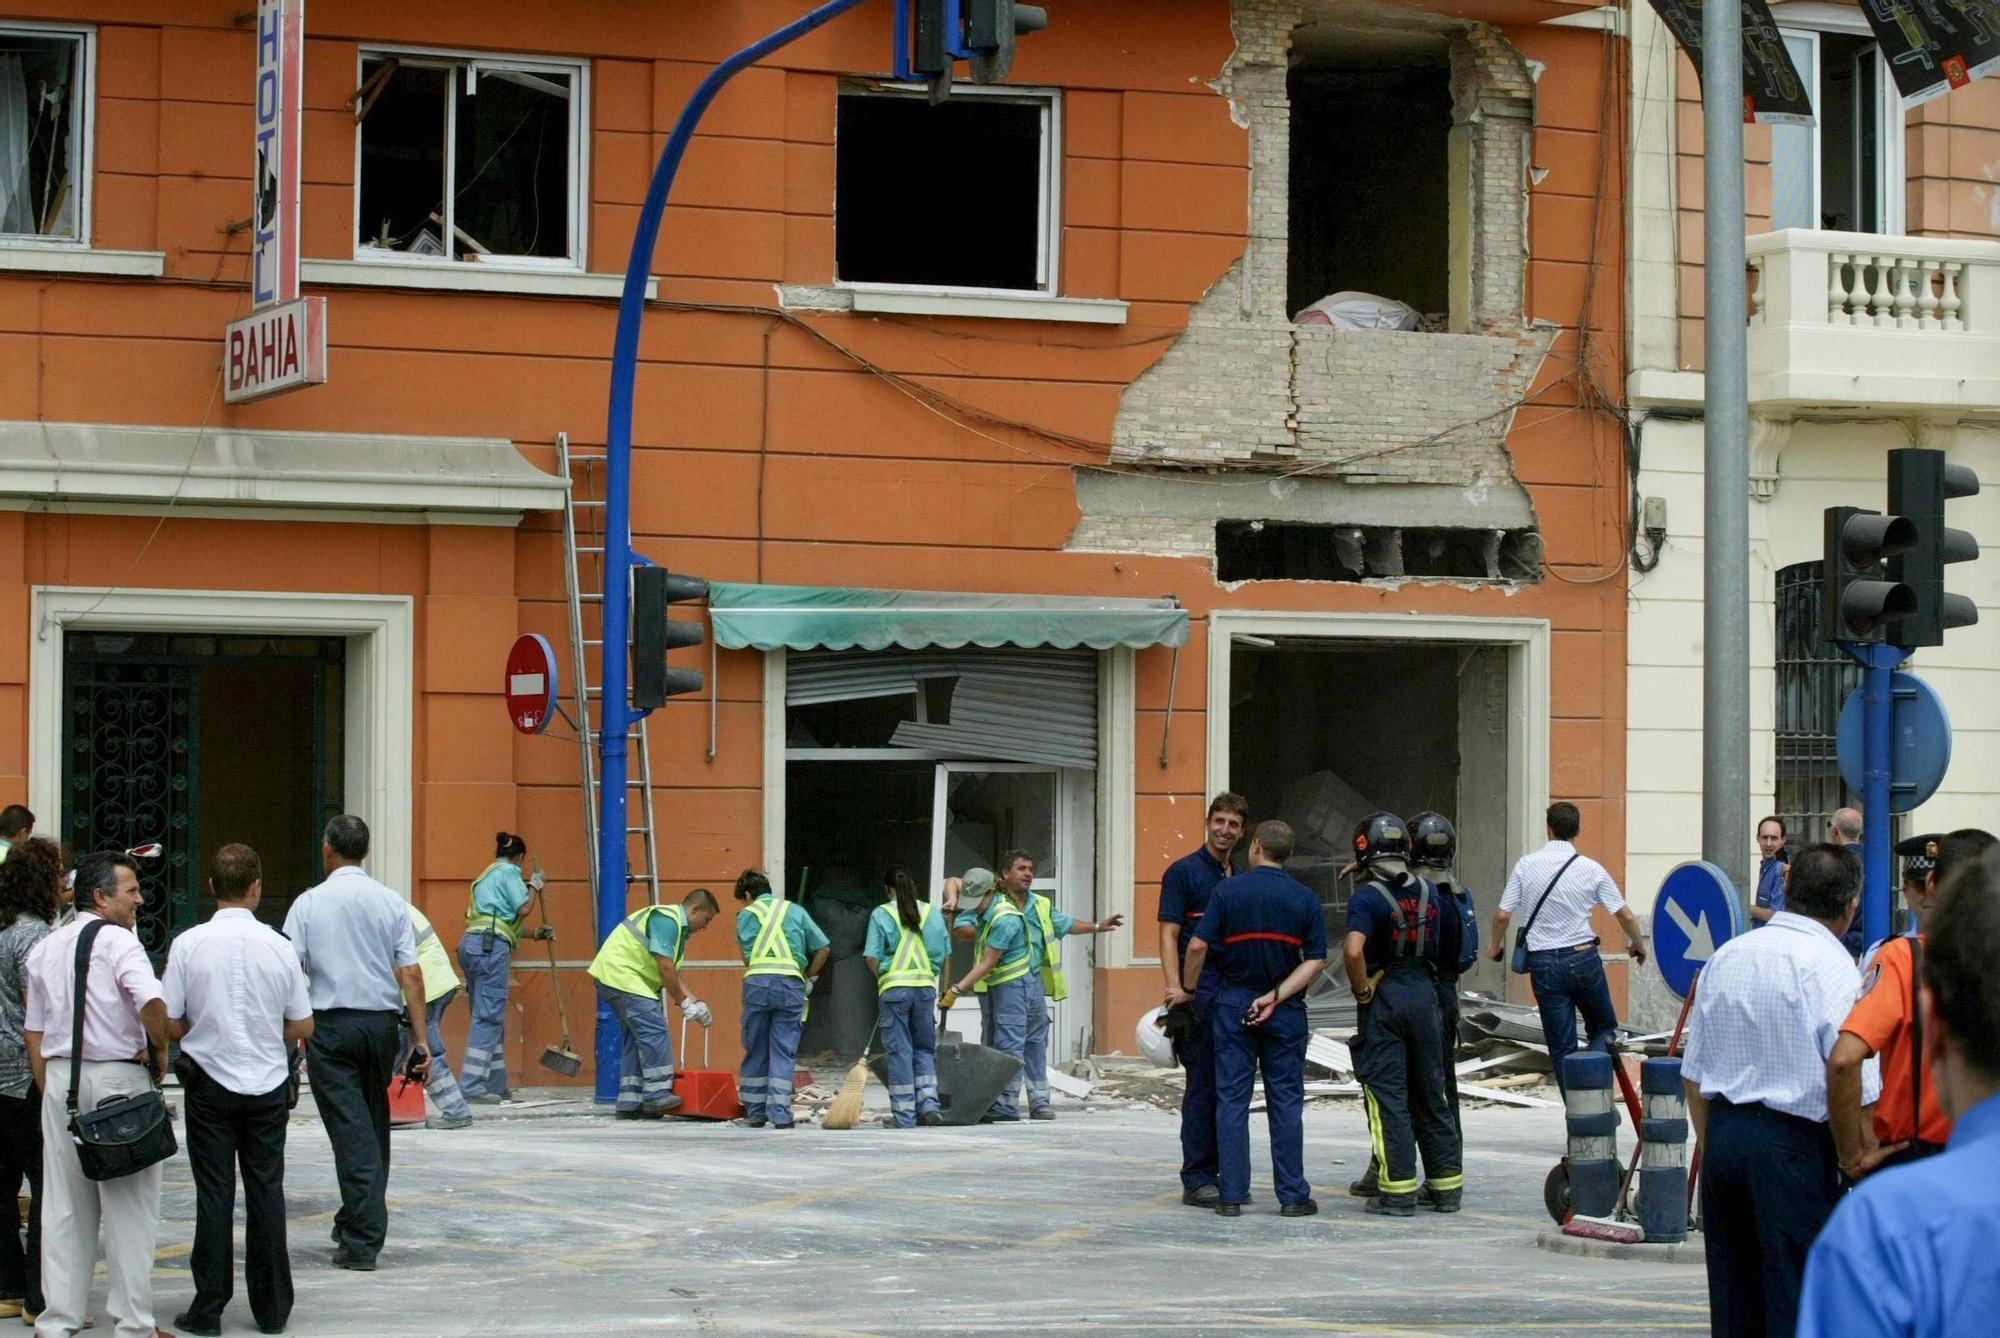 Estas son las fotos del hotel Bahia, uno de los dos atentados que cometió el etarra Asier Eceiza en 2003 en Alicante y Benidorm por los que ha sido condenado a a 182 años de carcel